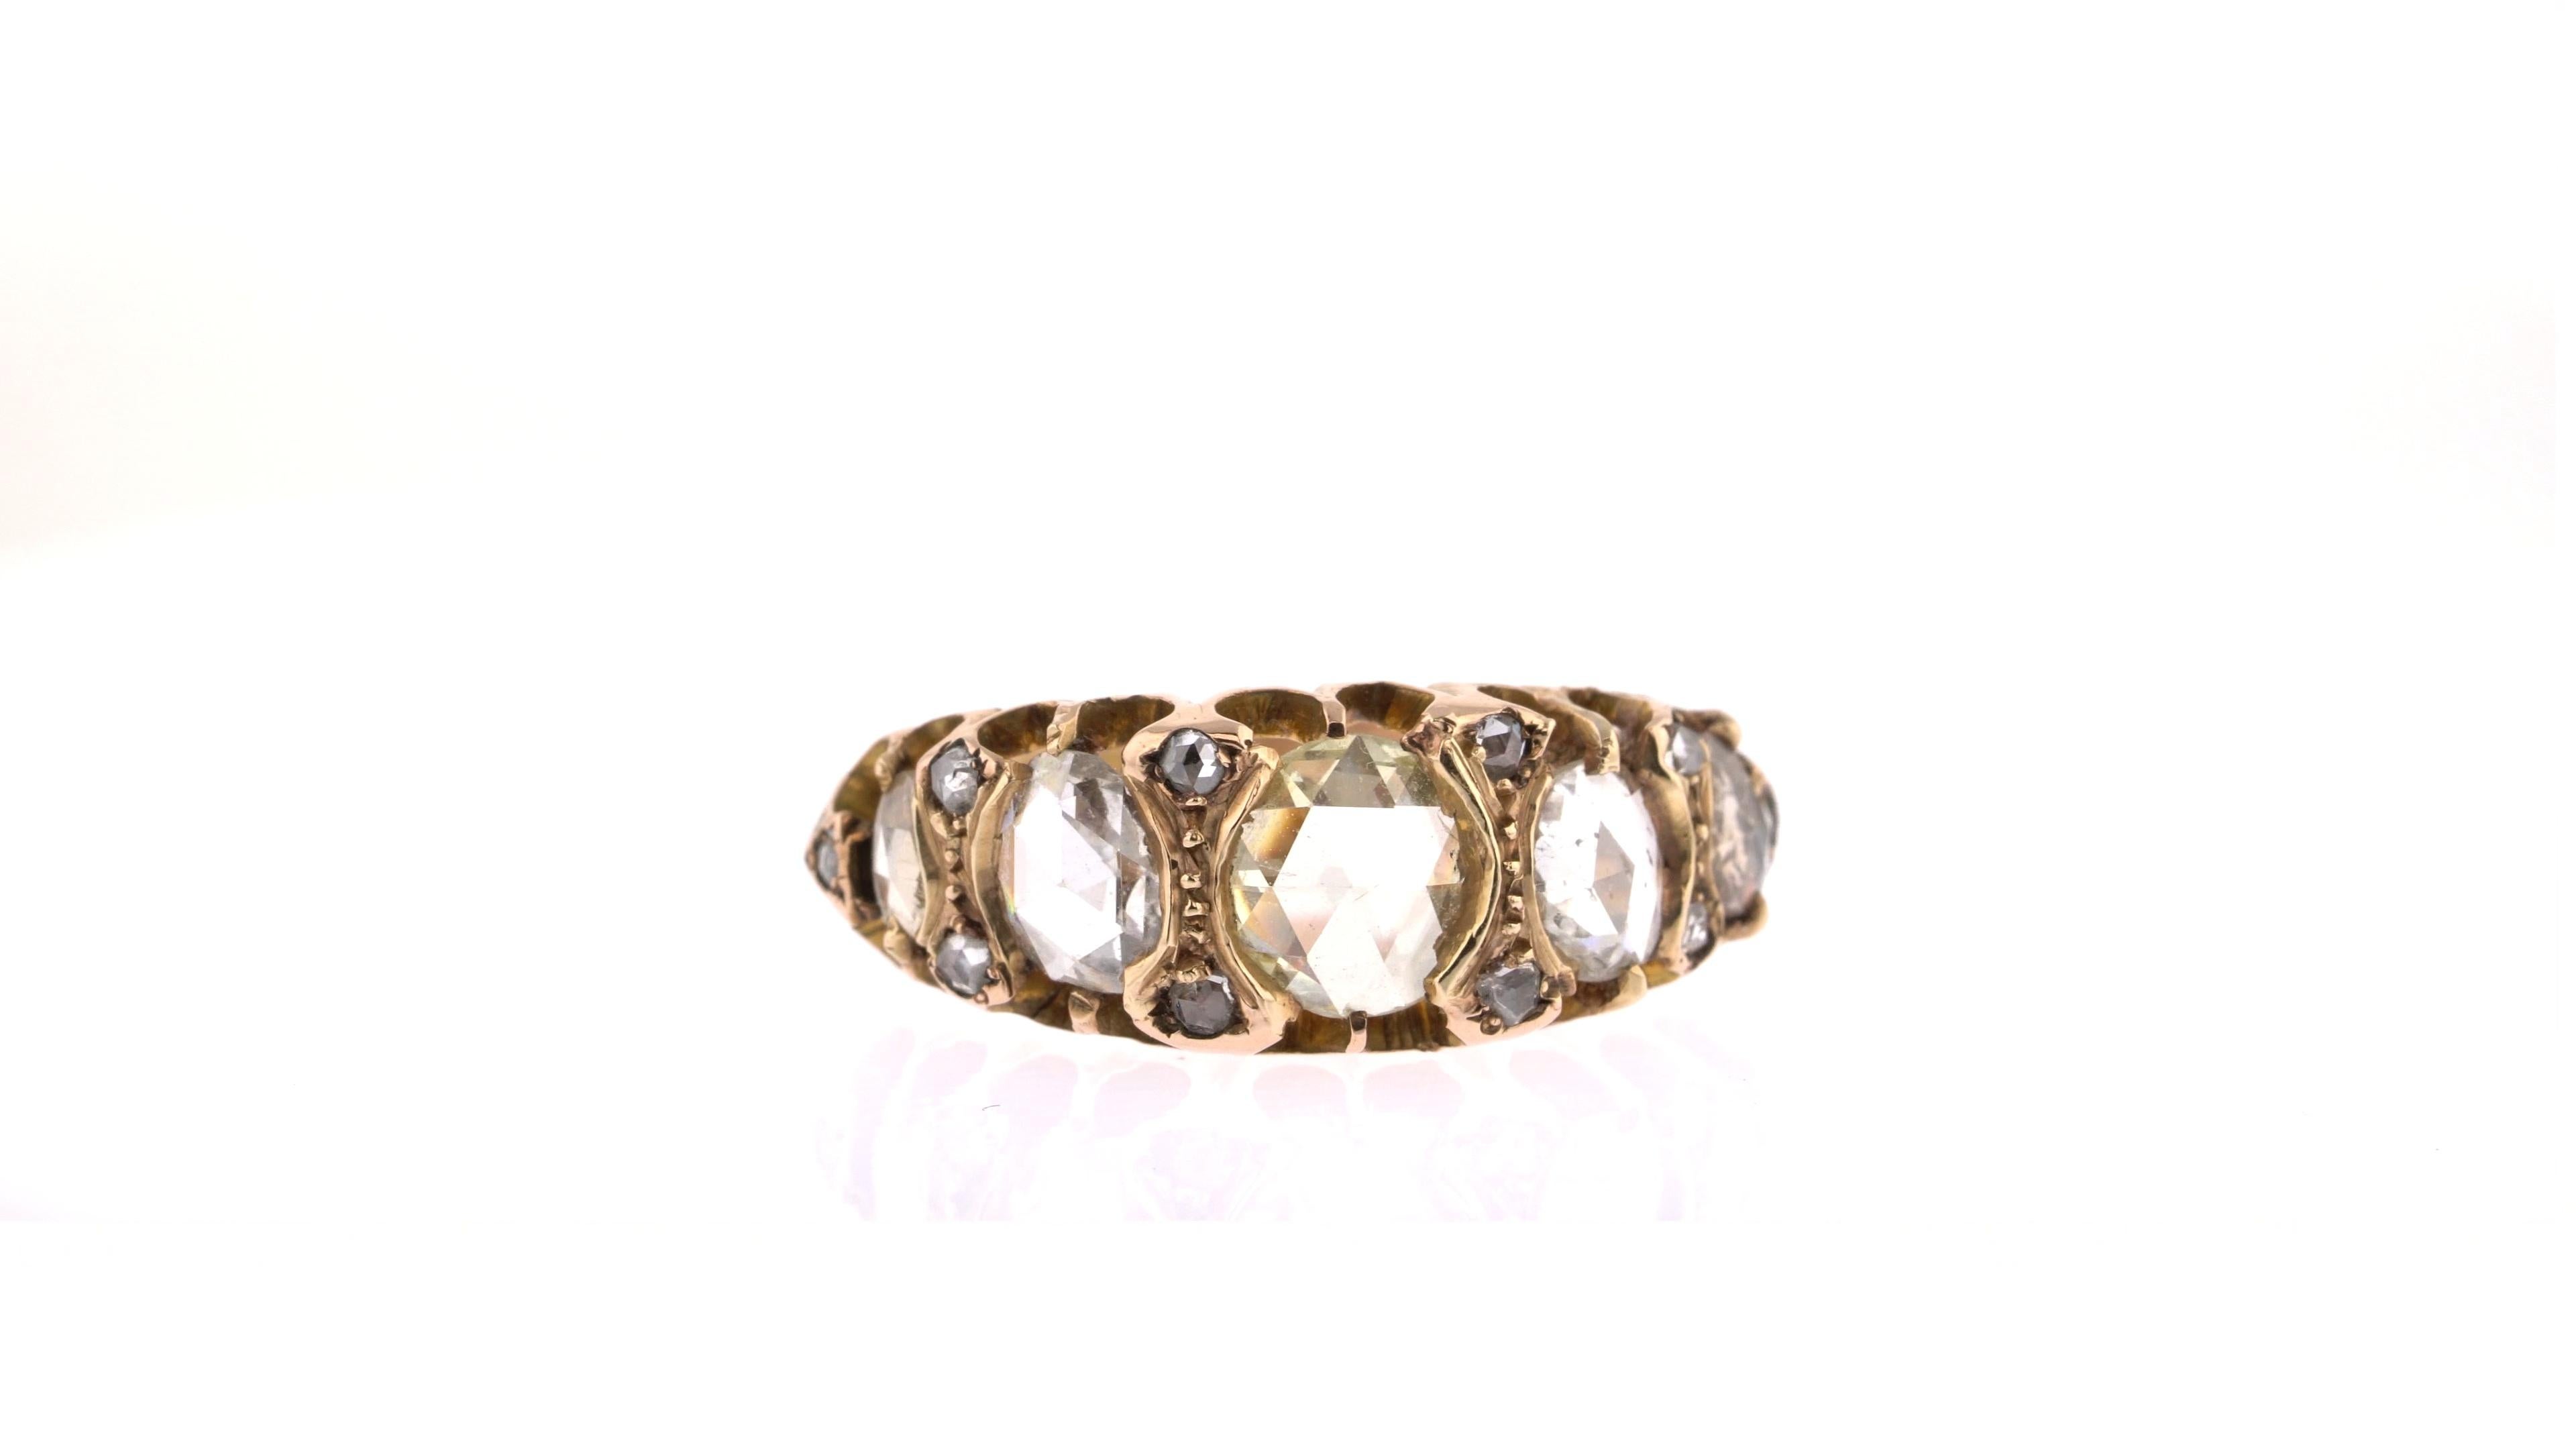 Dieser einzigartige Ring ist etwas ganz Besonderes und eignet sich perfekt für eine Trägerin, die einen nuancierten Look bevorzugt. 
Dies ist ein seltenes englisches, viktorianisches Fancy-Color-Diamantenband mit etwa 2 Karat Diamanten.  Der